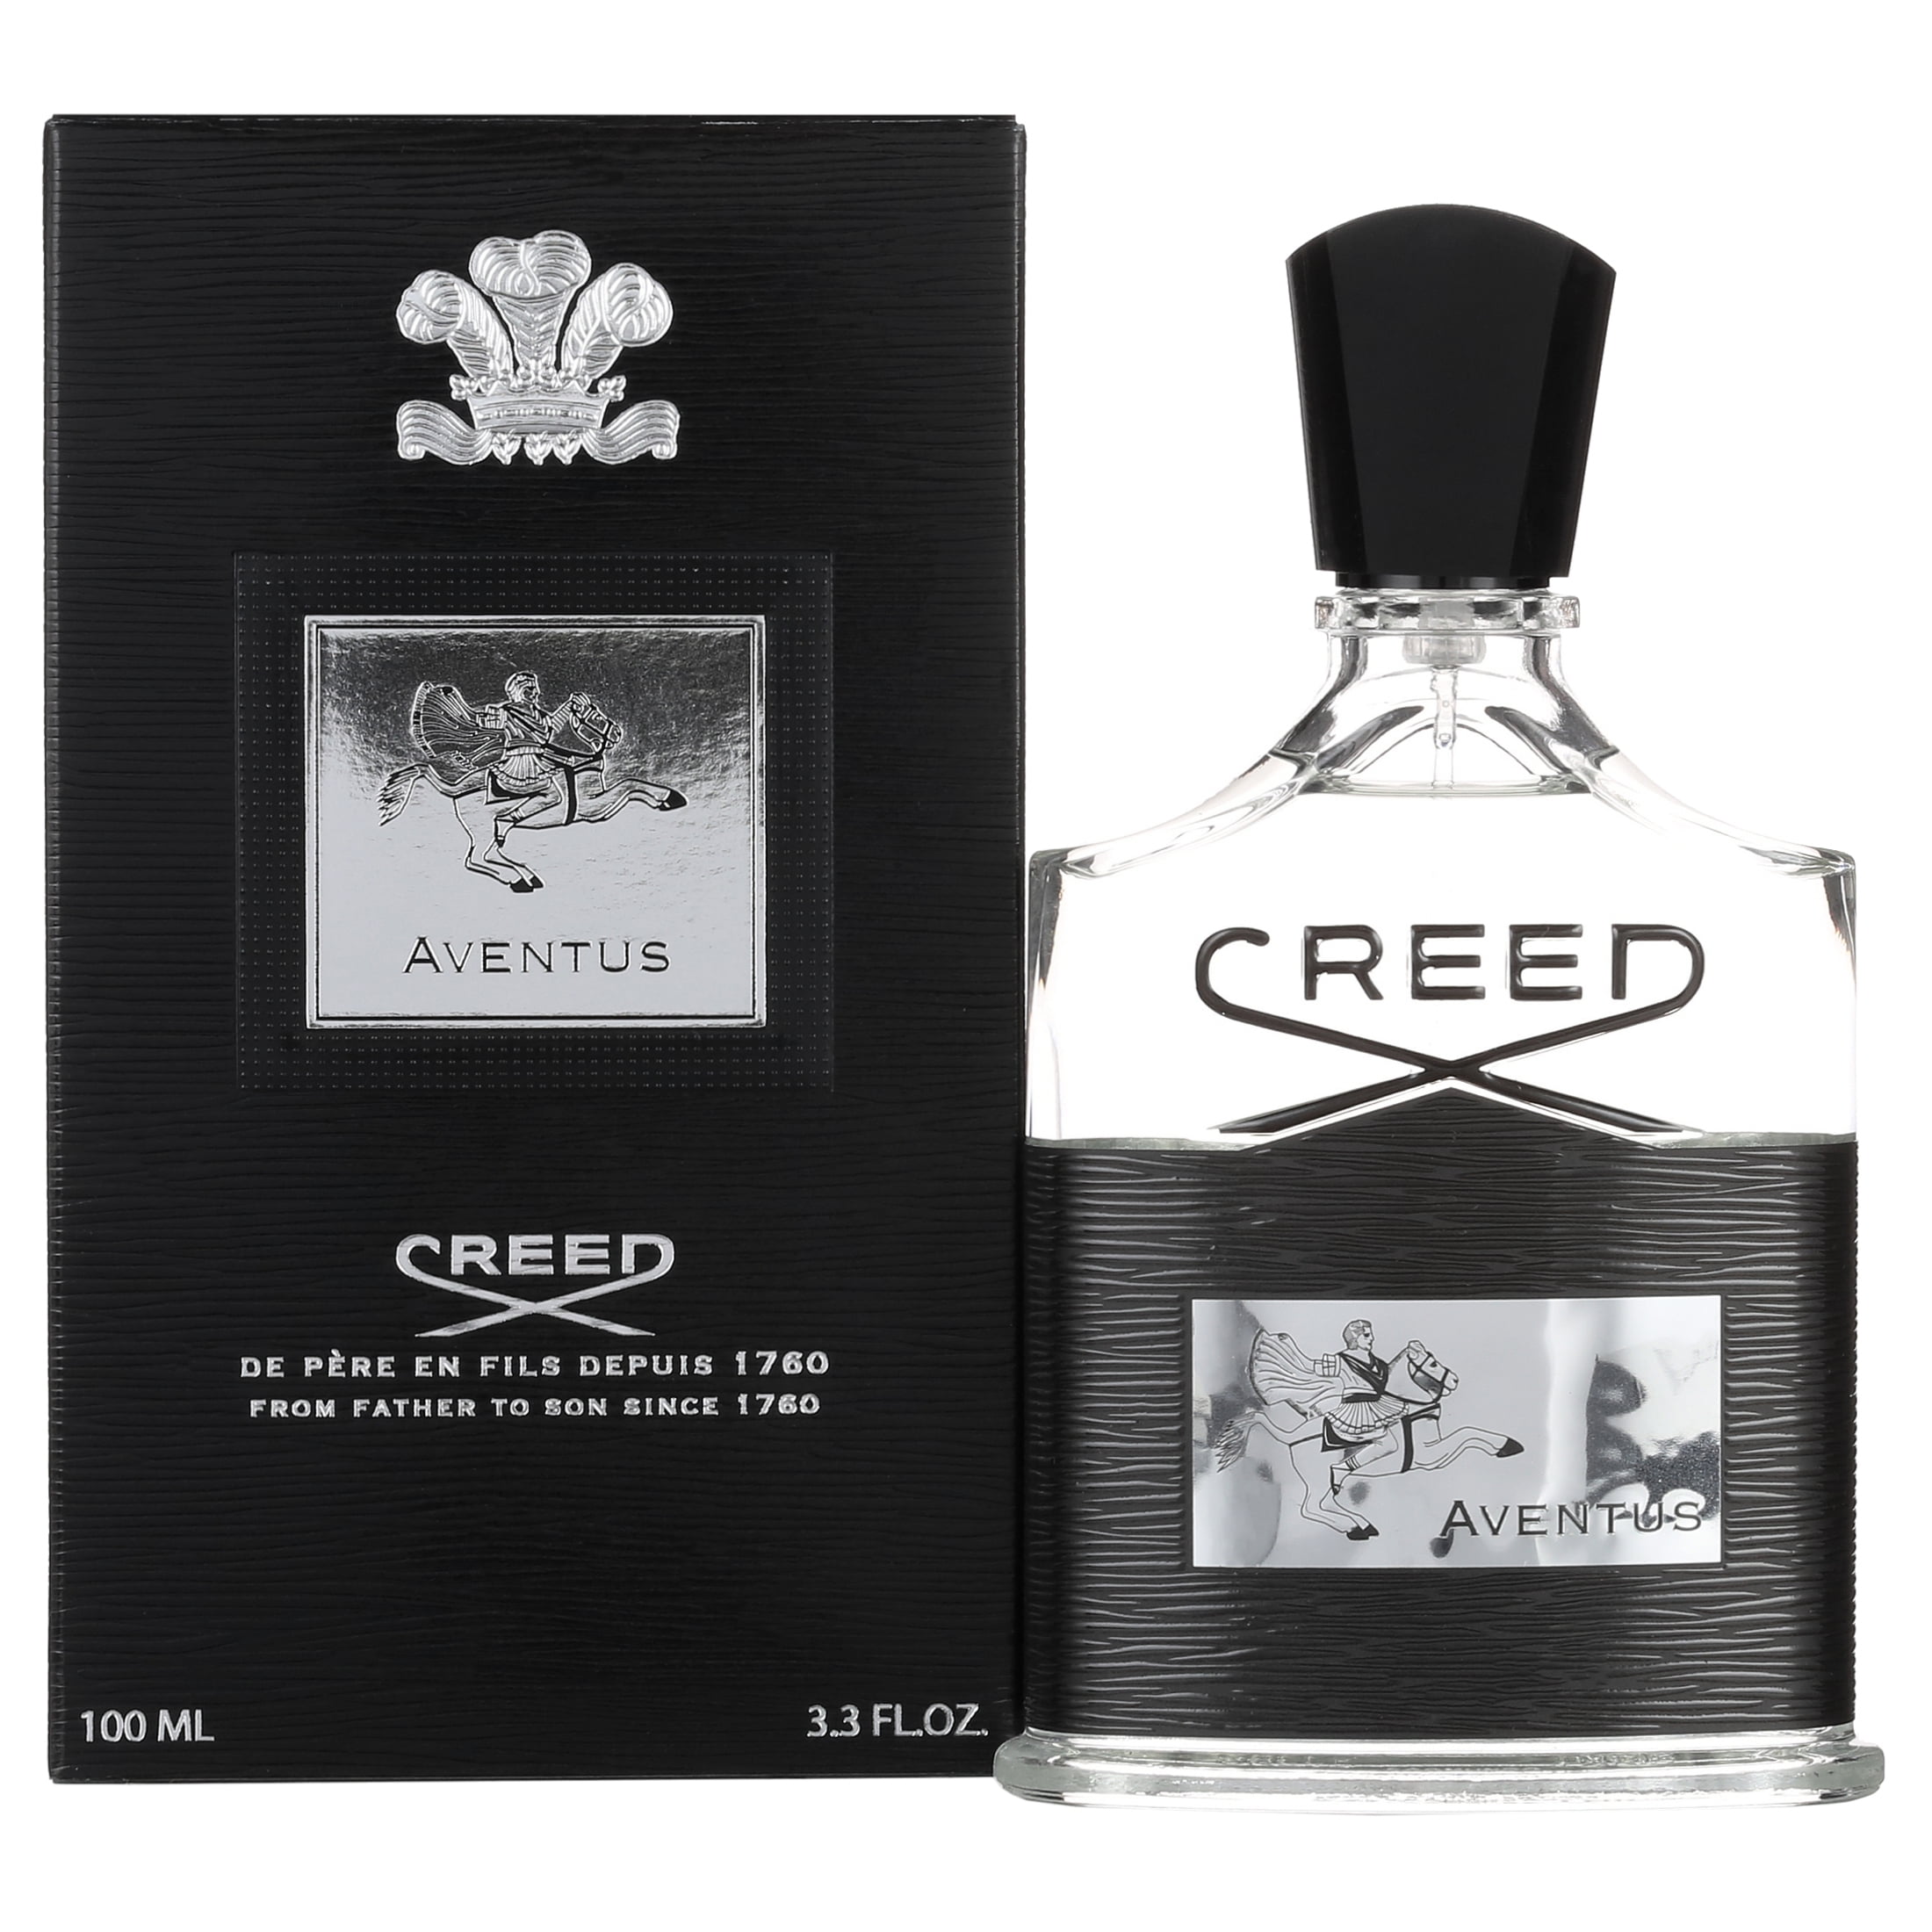 Парфюм крид авентус цена. Creed Aventus 30ml. Аромат Creed Aventus. Creed Aventus Eau de Parfum 100 ml. Aventus Creed Price.